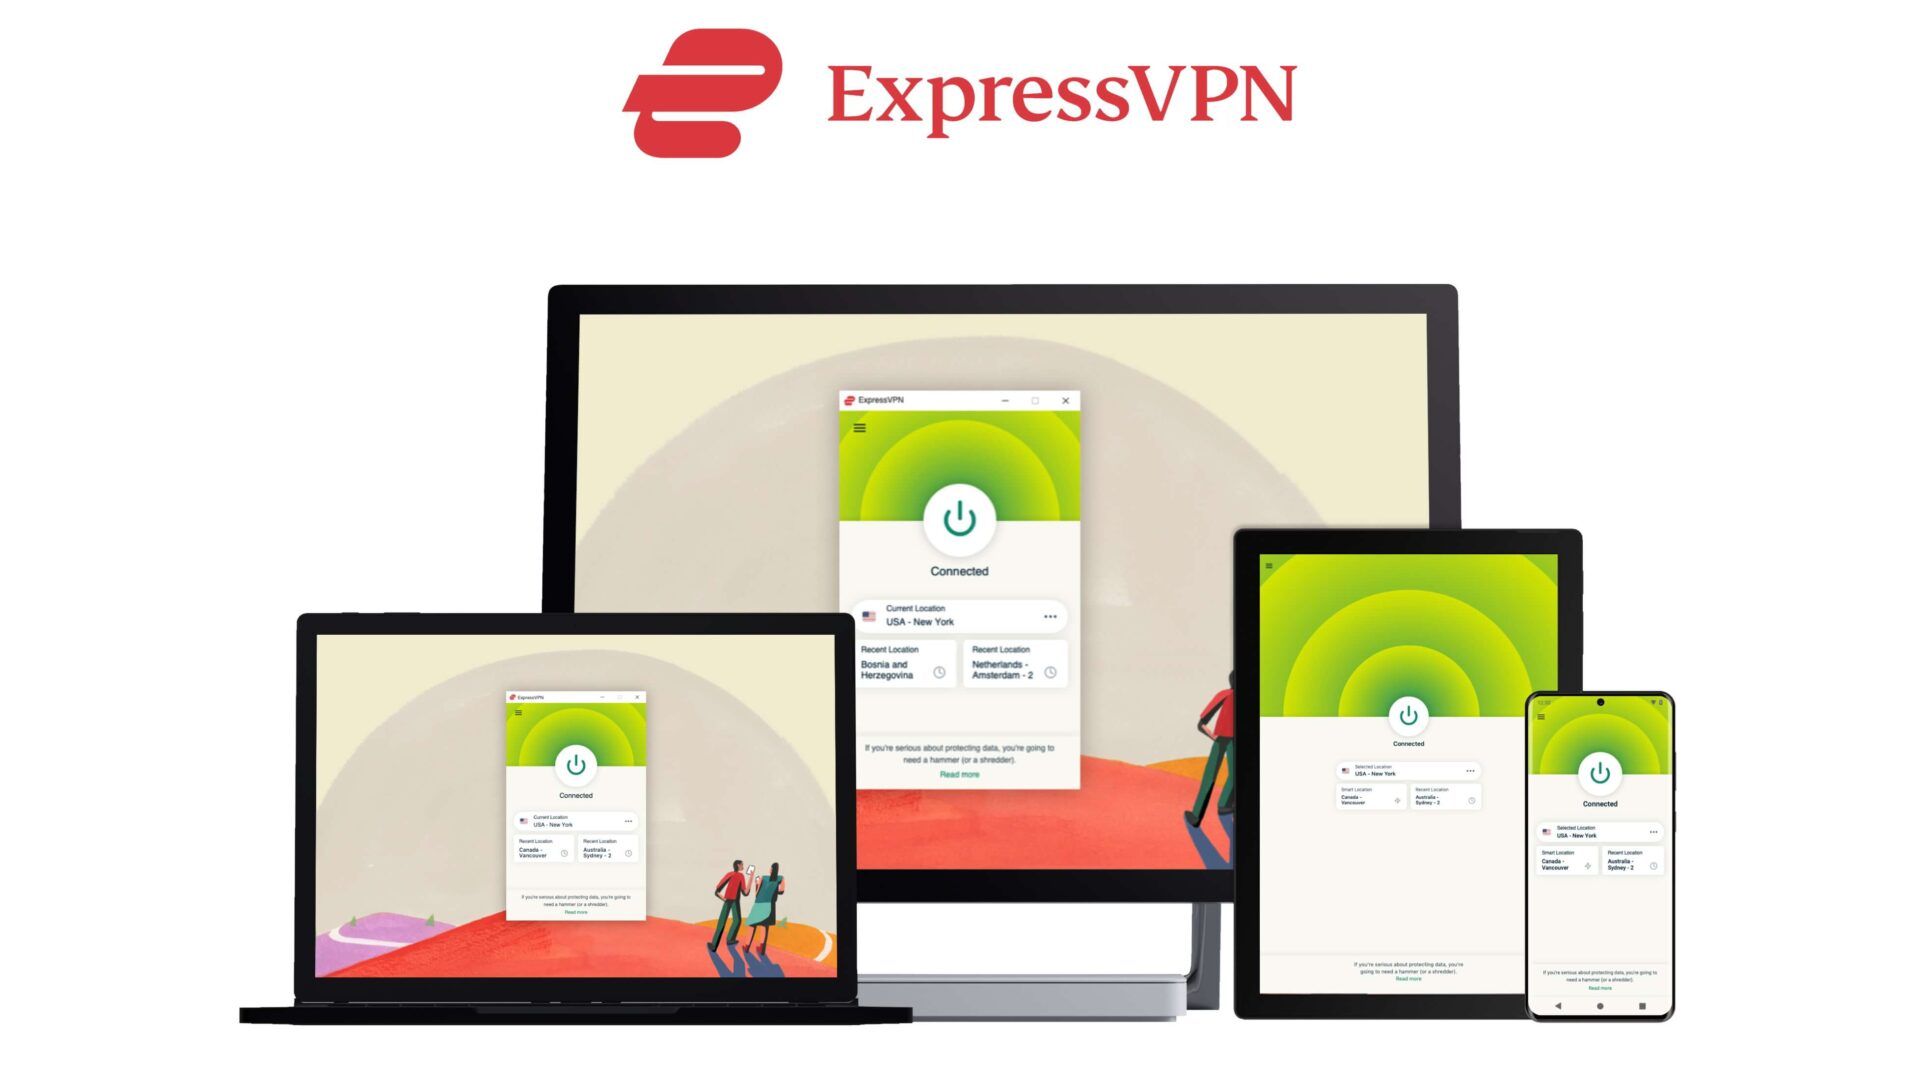 ExpressVPN devices image